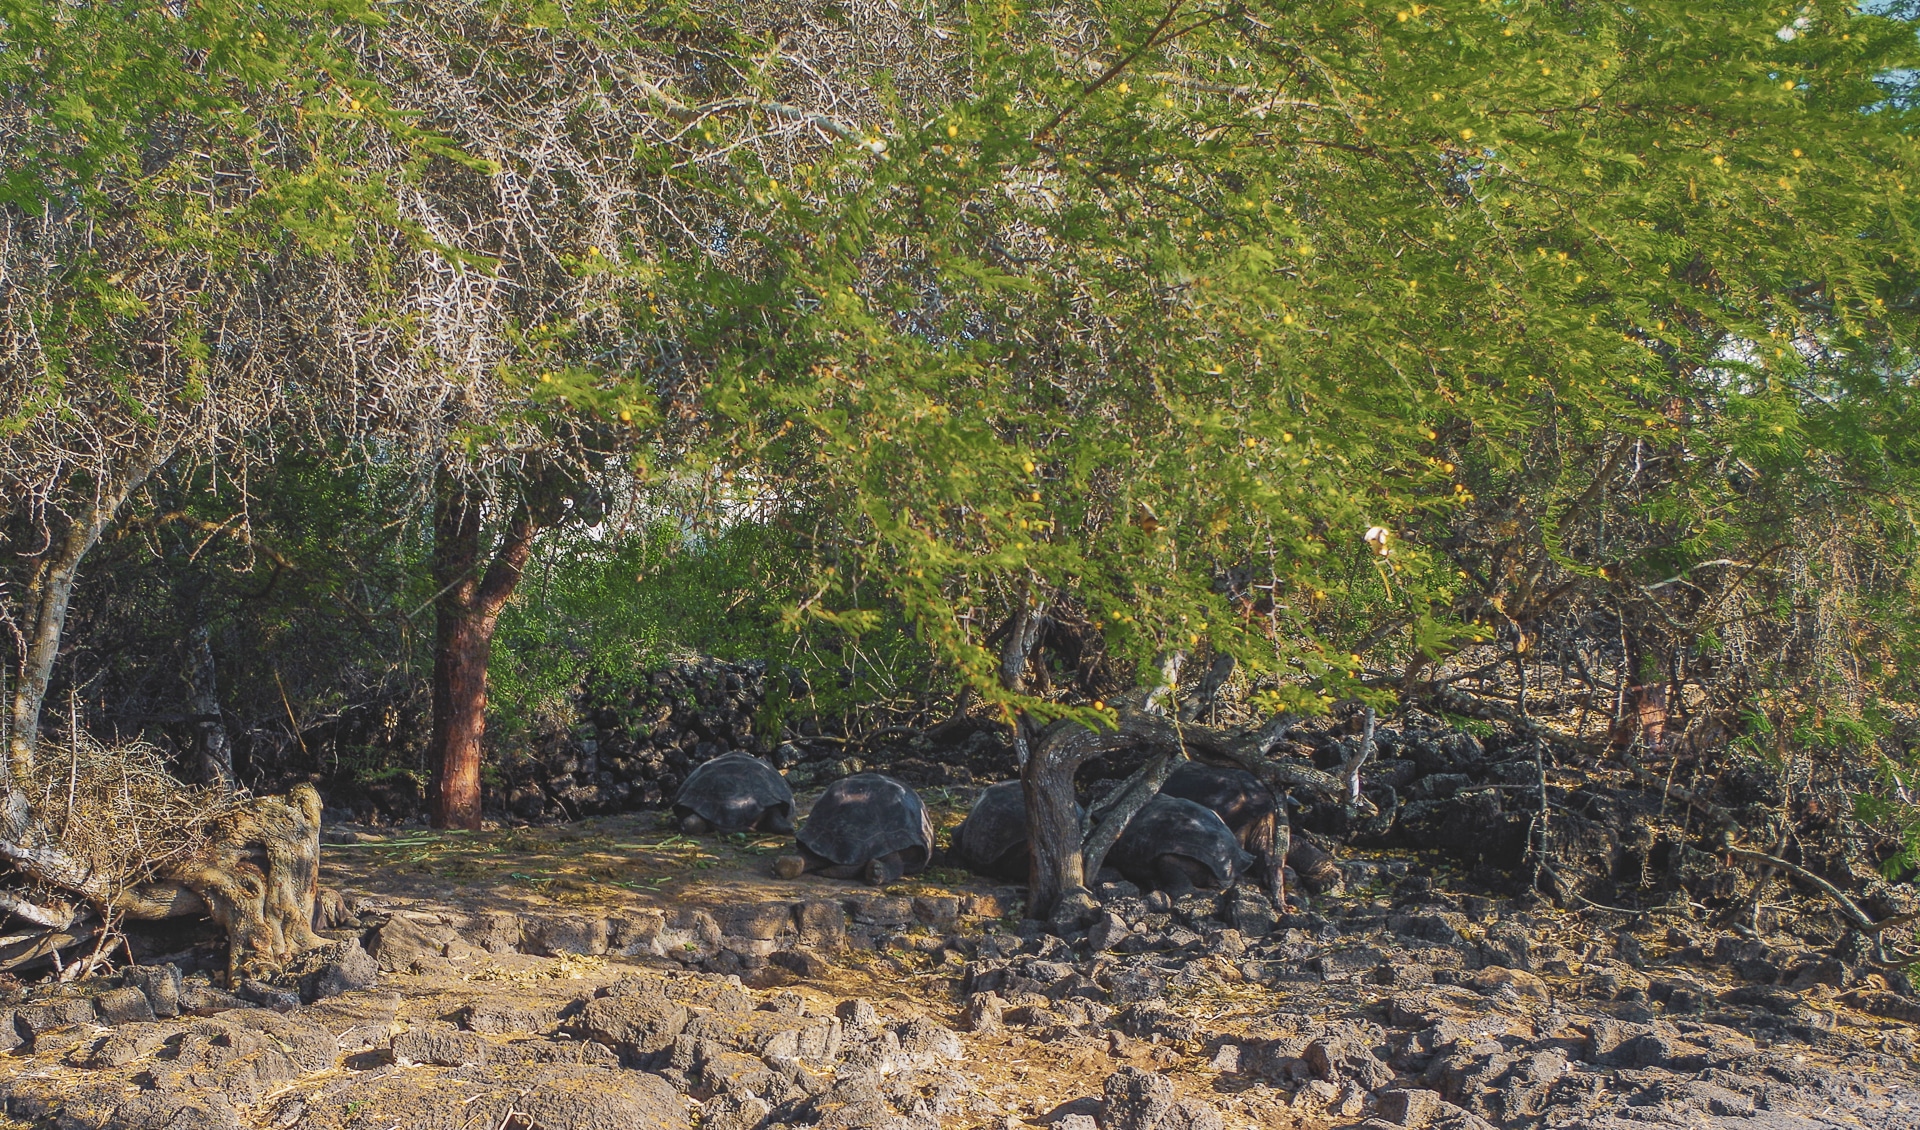 groupe de tortues géantes a l'ombre d'un arbre Galapagos